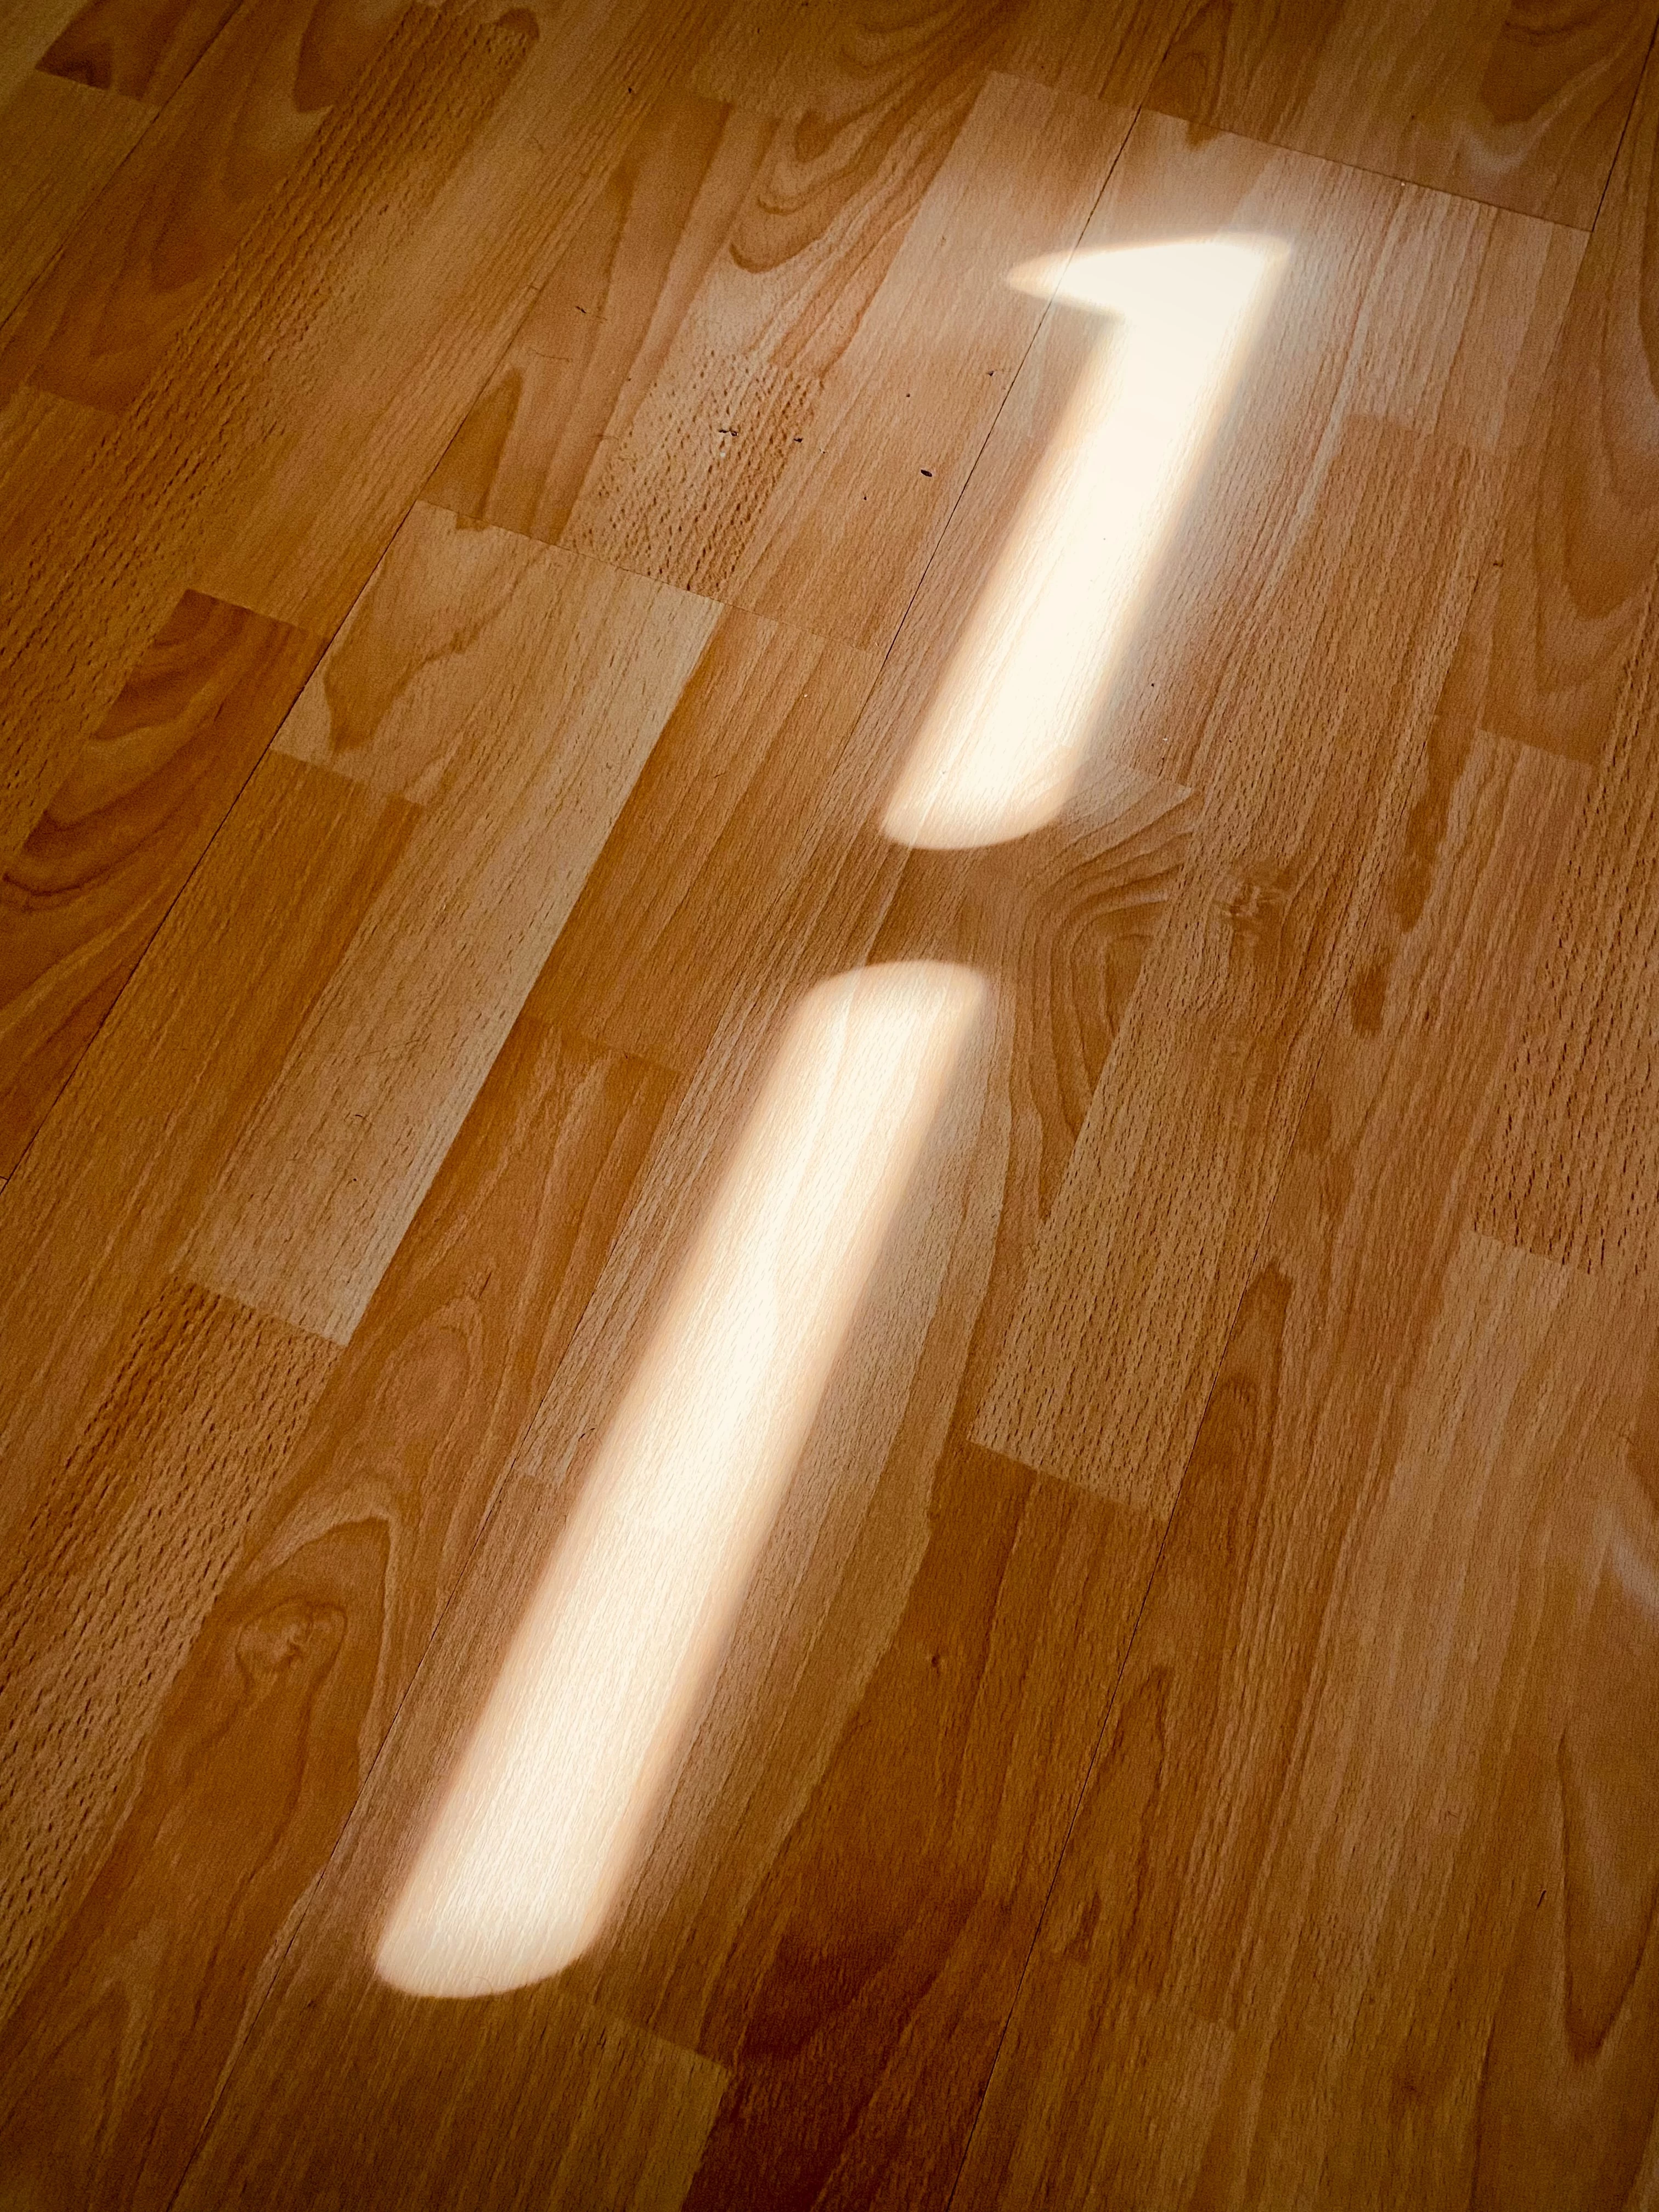 shiny laminate floor